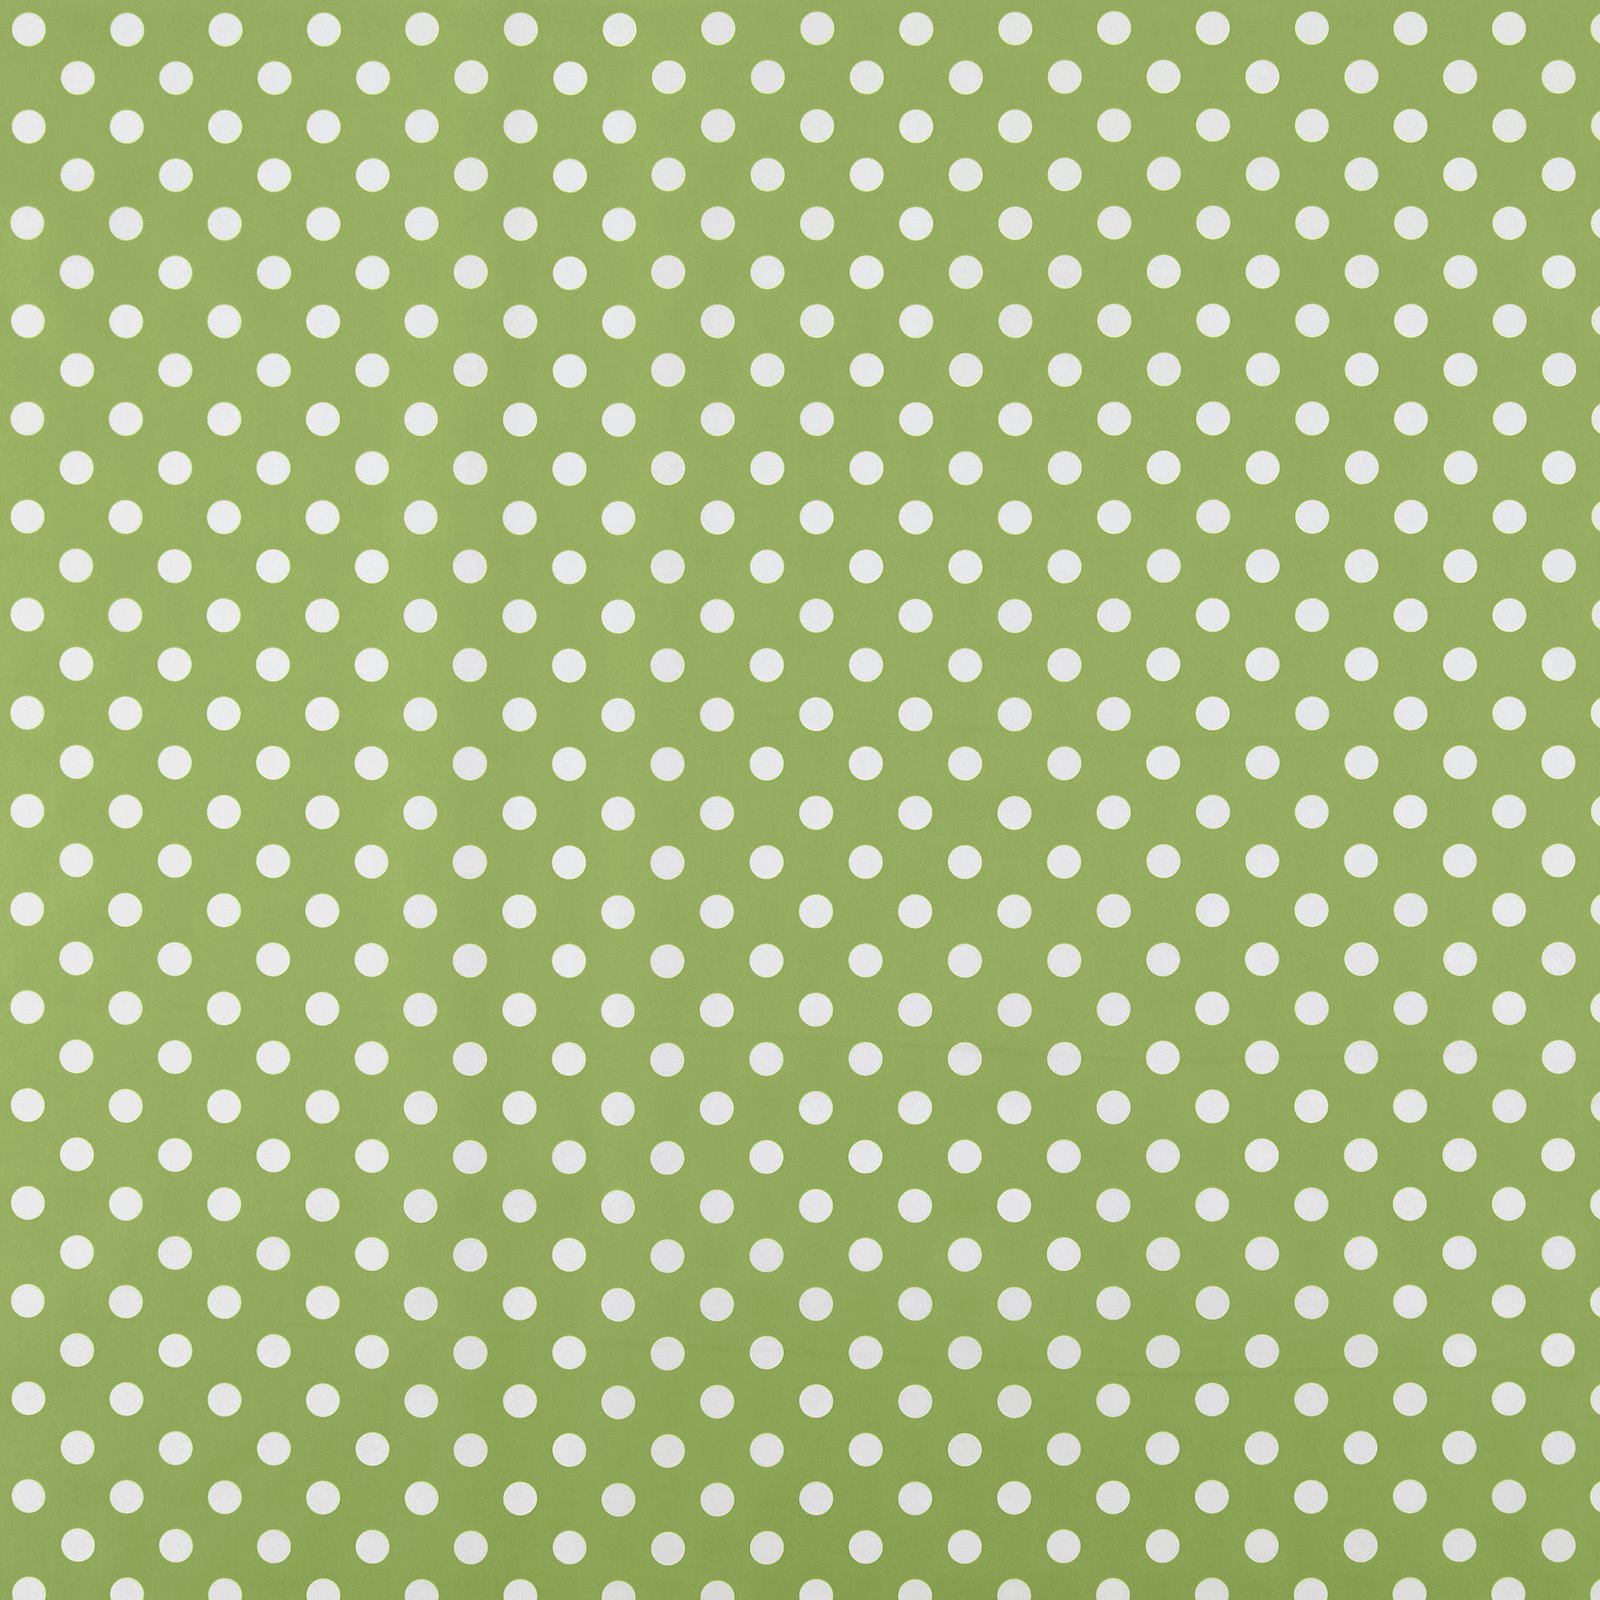 Non-woven oilcloth apple green/white do 861396_pack_sp